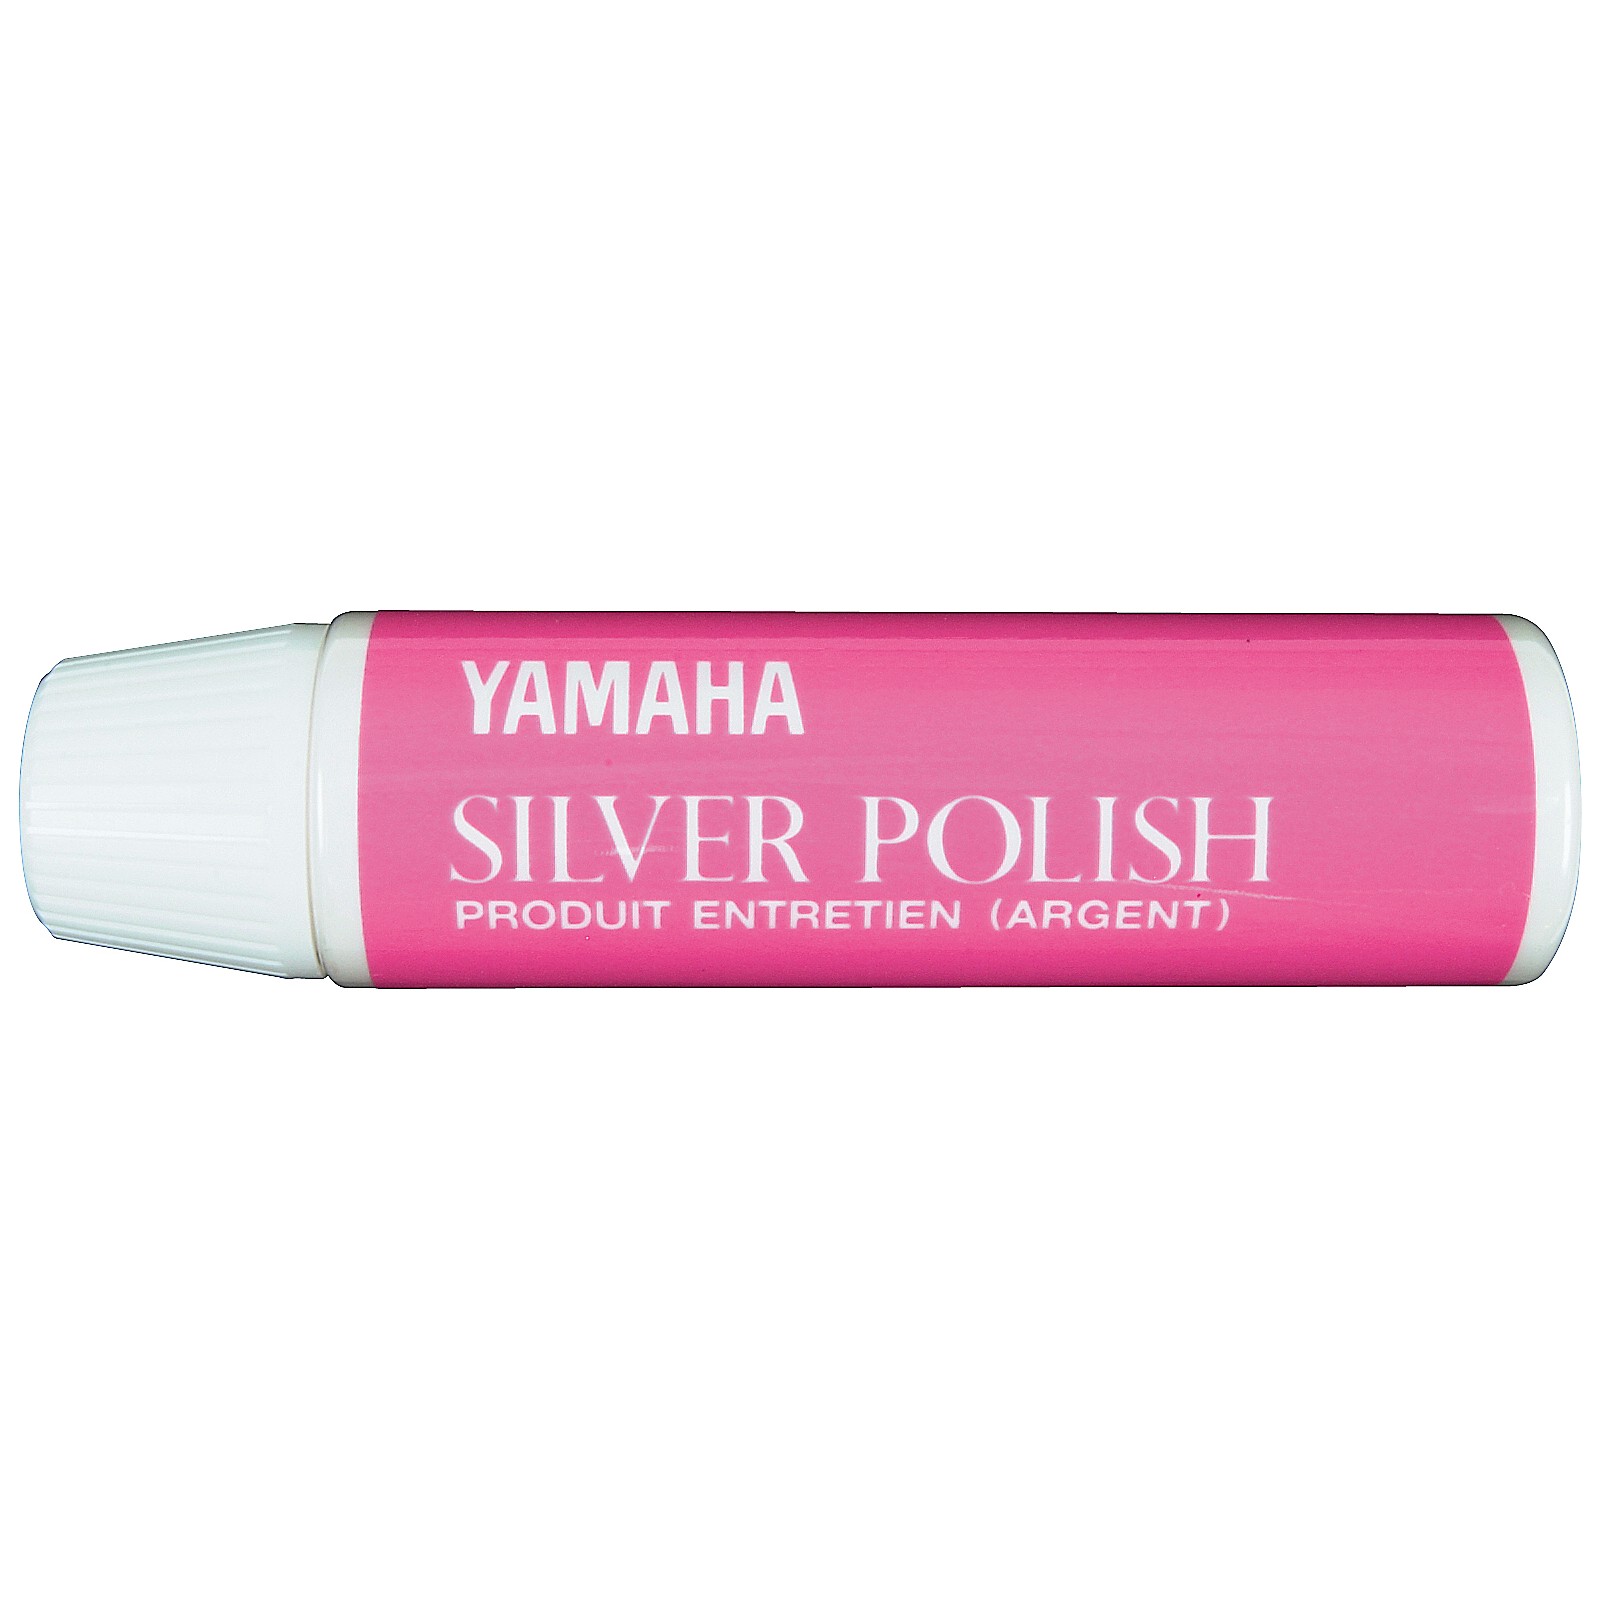 Yamaha Polishing cloth Silver Large, € 19,49